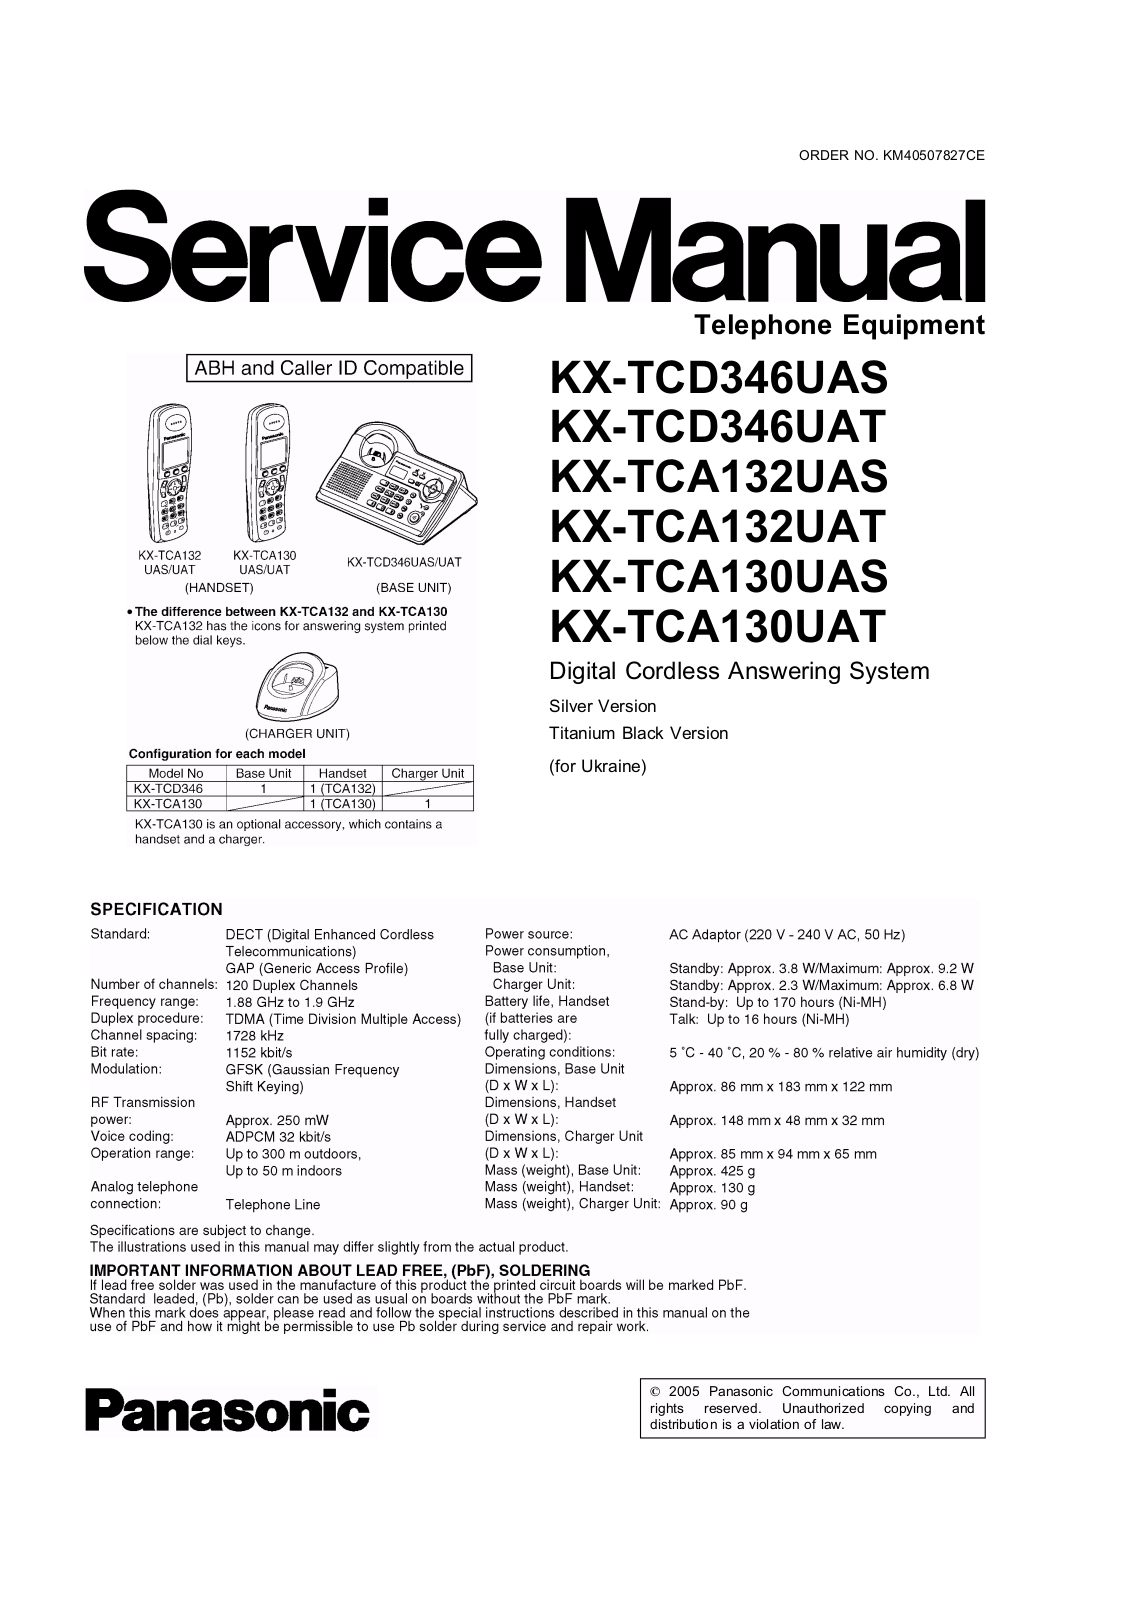 Panasonic KX-TCD346, KX-TCA132, KX-TCA130 Service manual